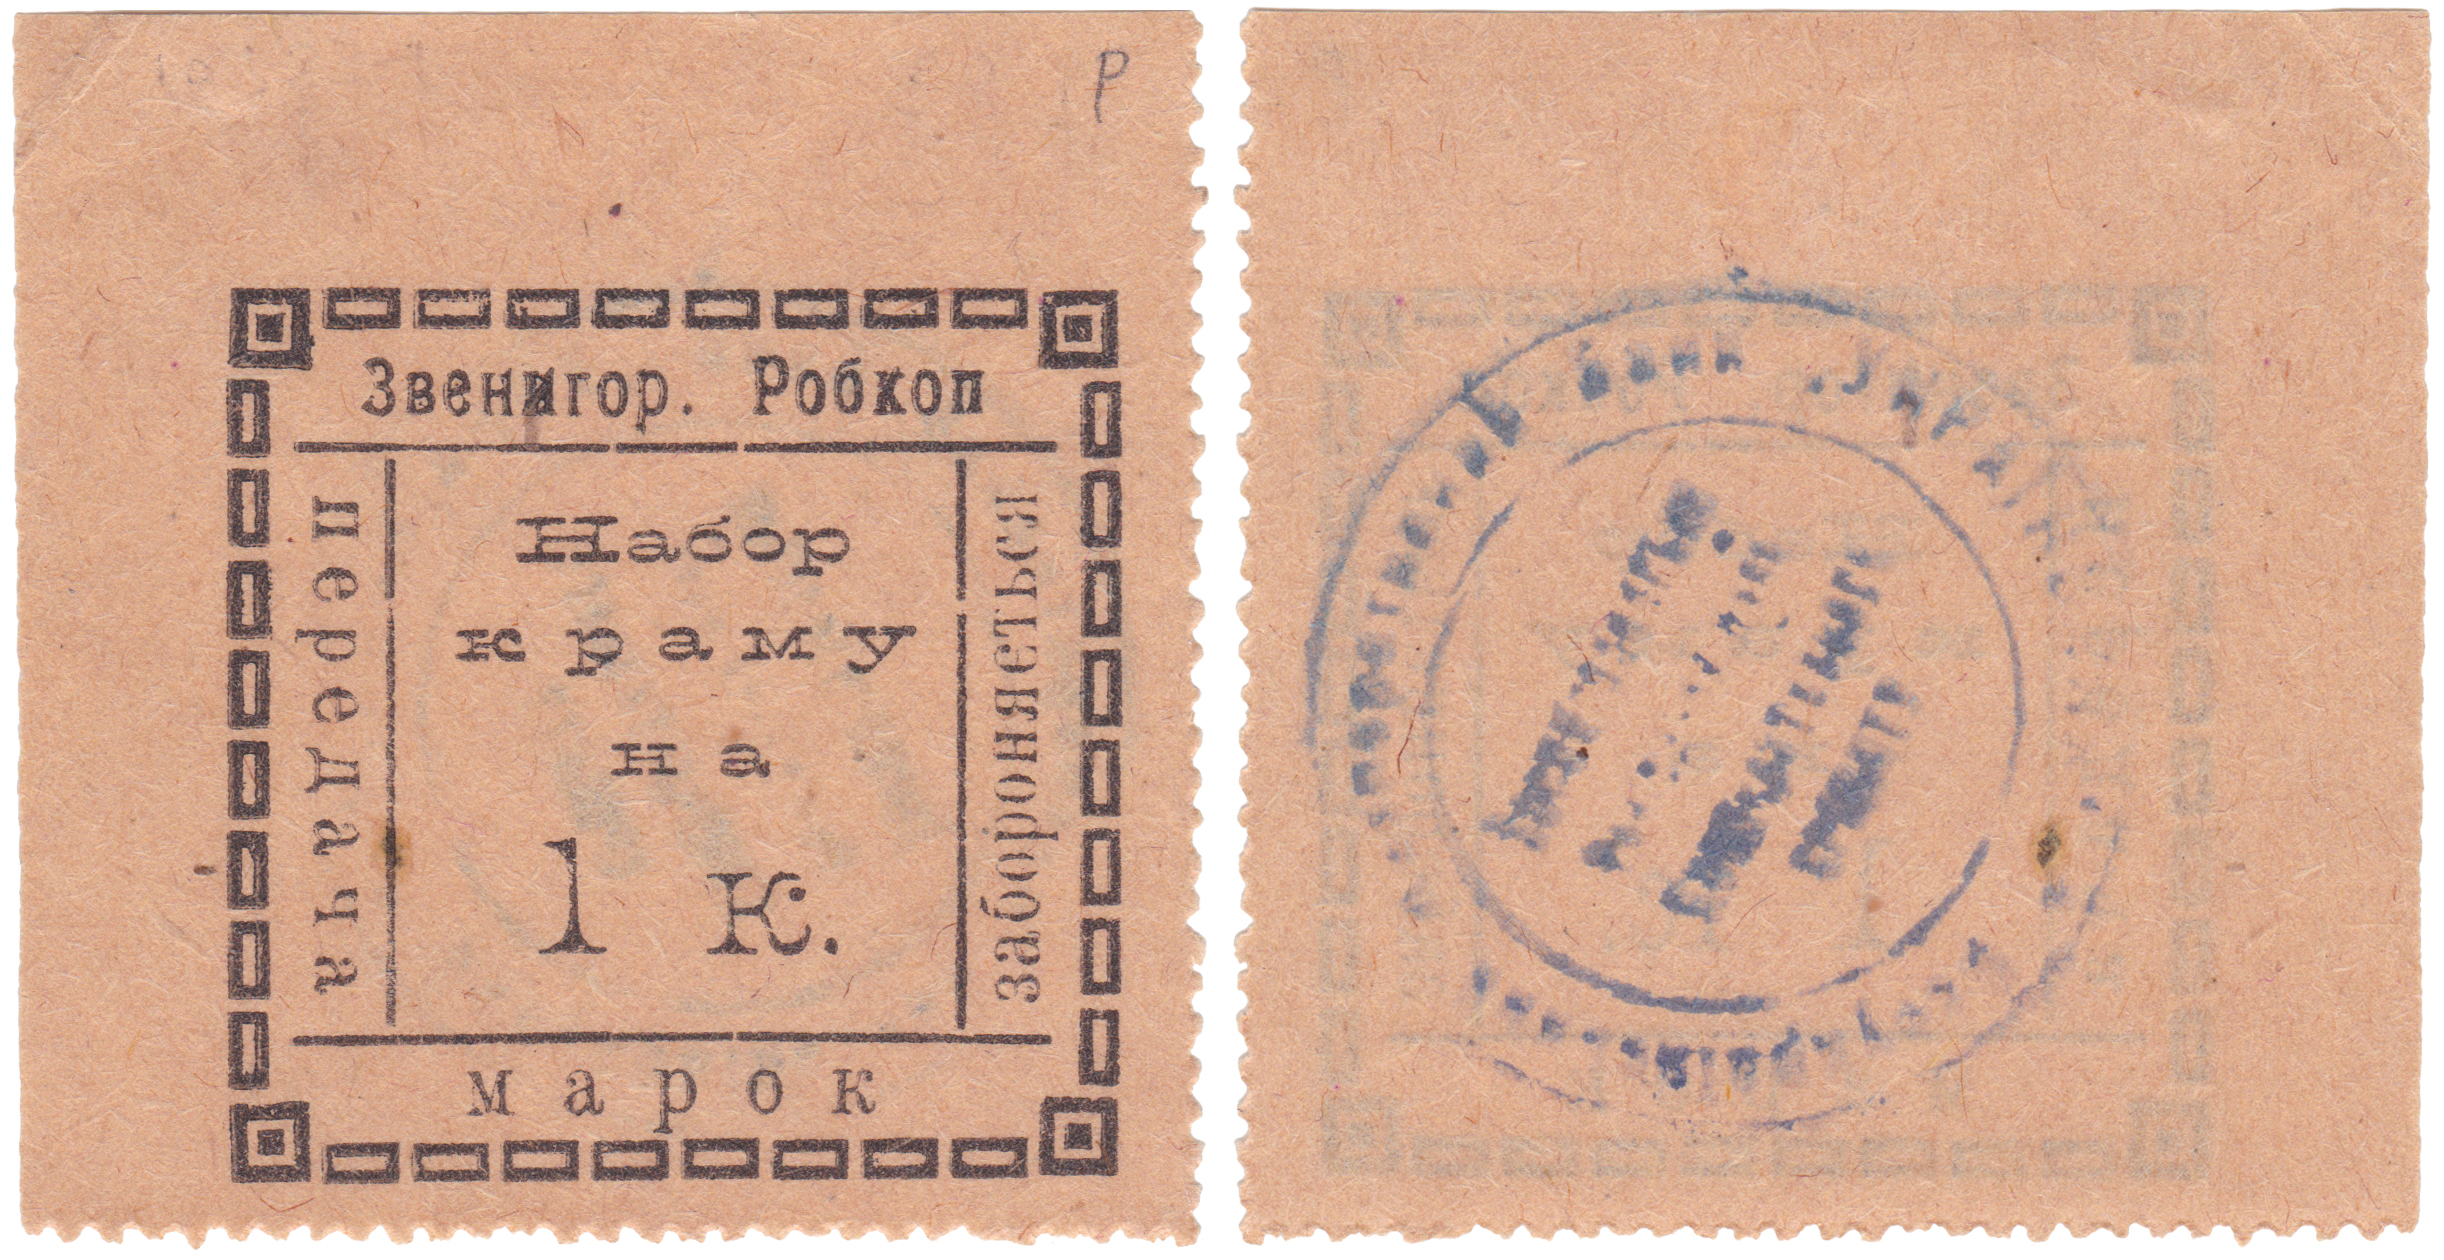 Марка набор товара на 1 копейку 1919 год. Звенигородский Робкоп, Черкасская область.